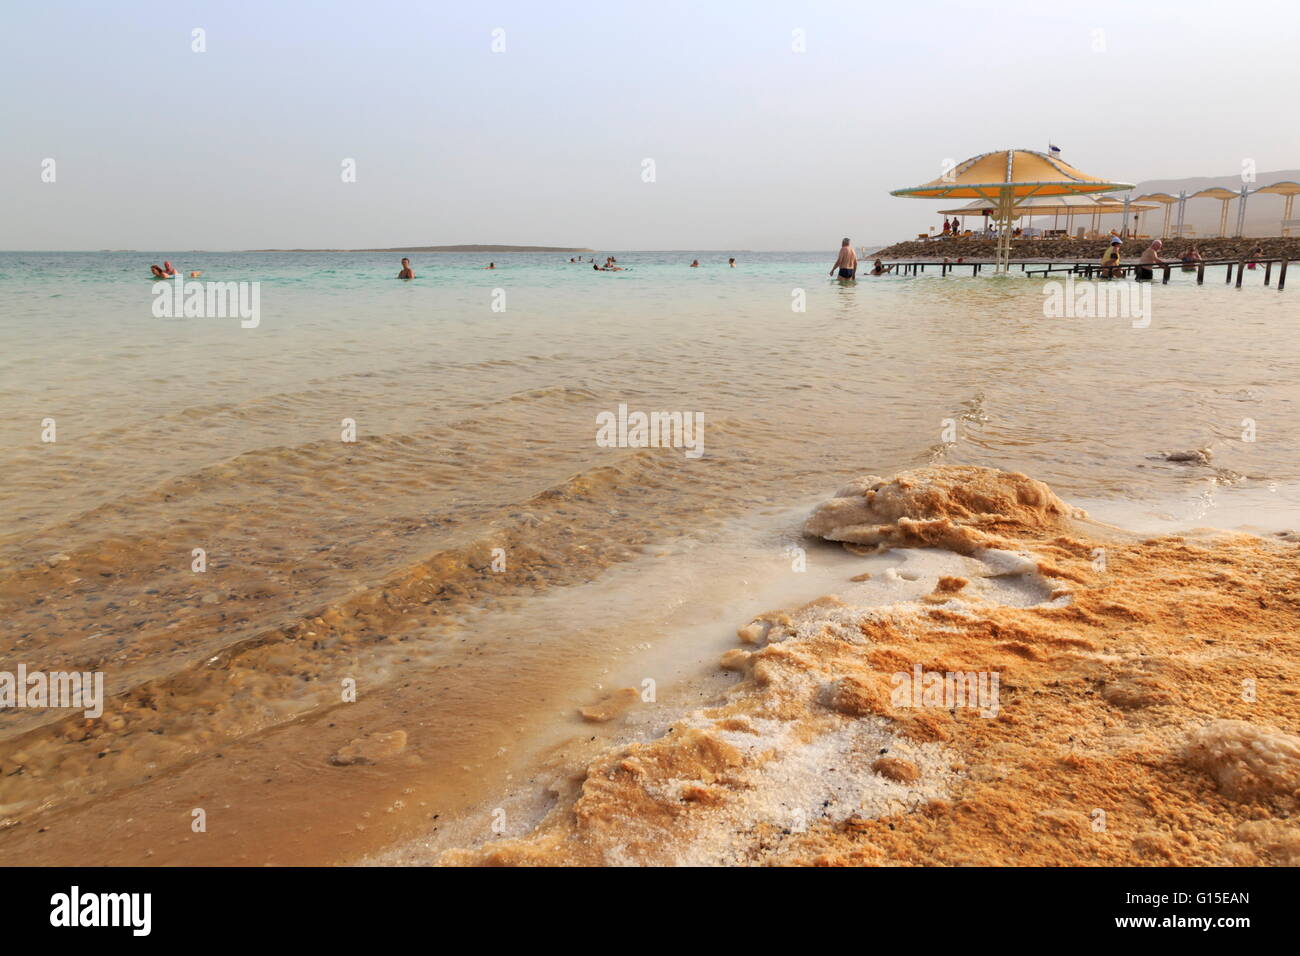 Les baigneurs dans la mer Morte, avec des rives salées, Ein Bokek (En Boqeq) plage, Israël, Moyen Orient Banque D'Images